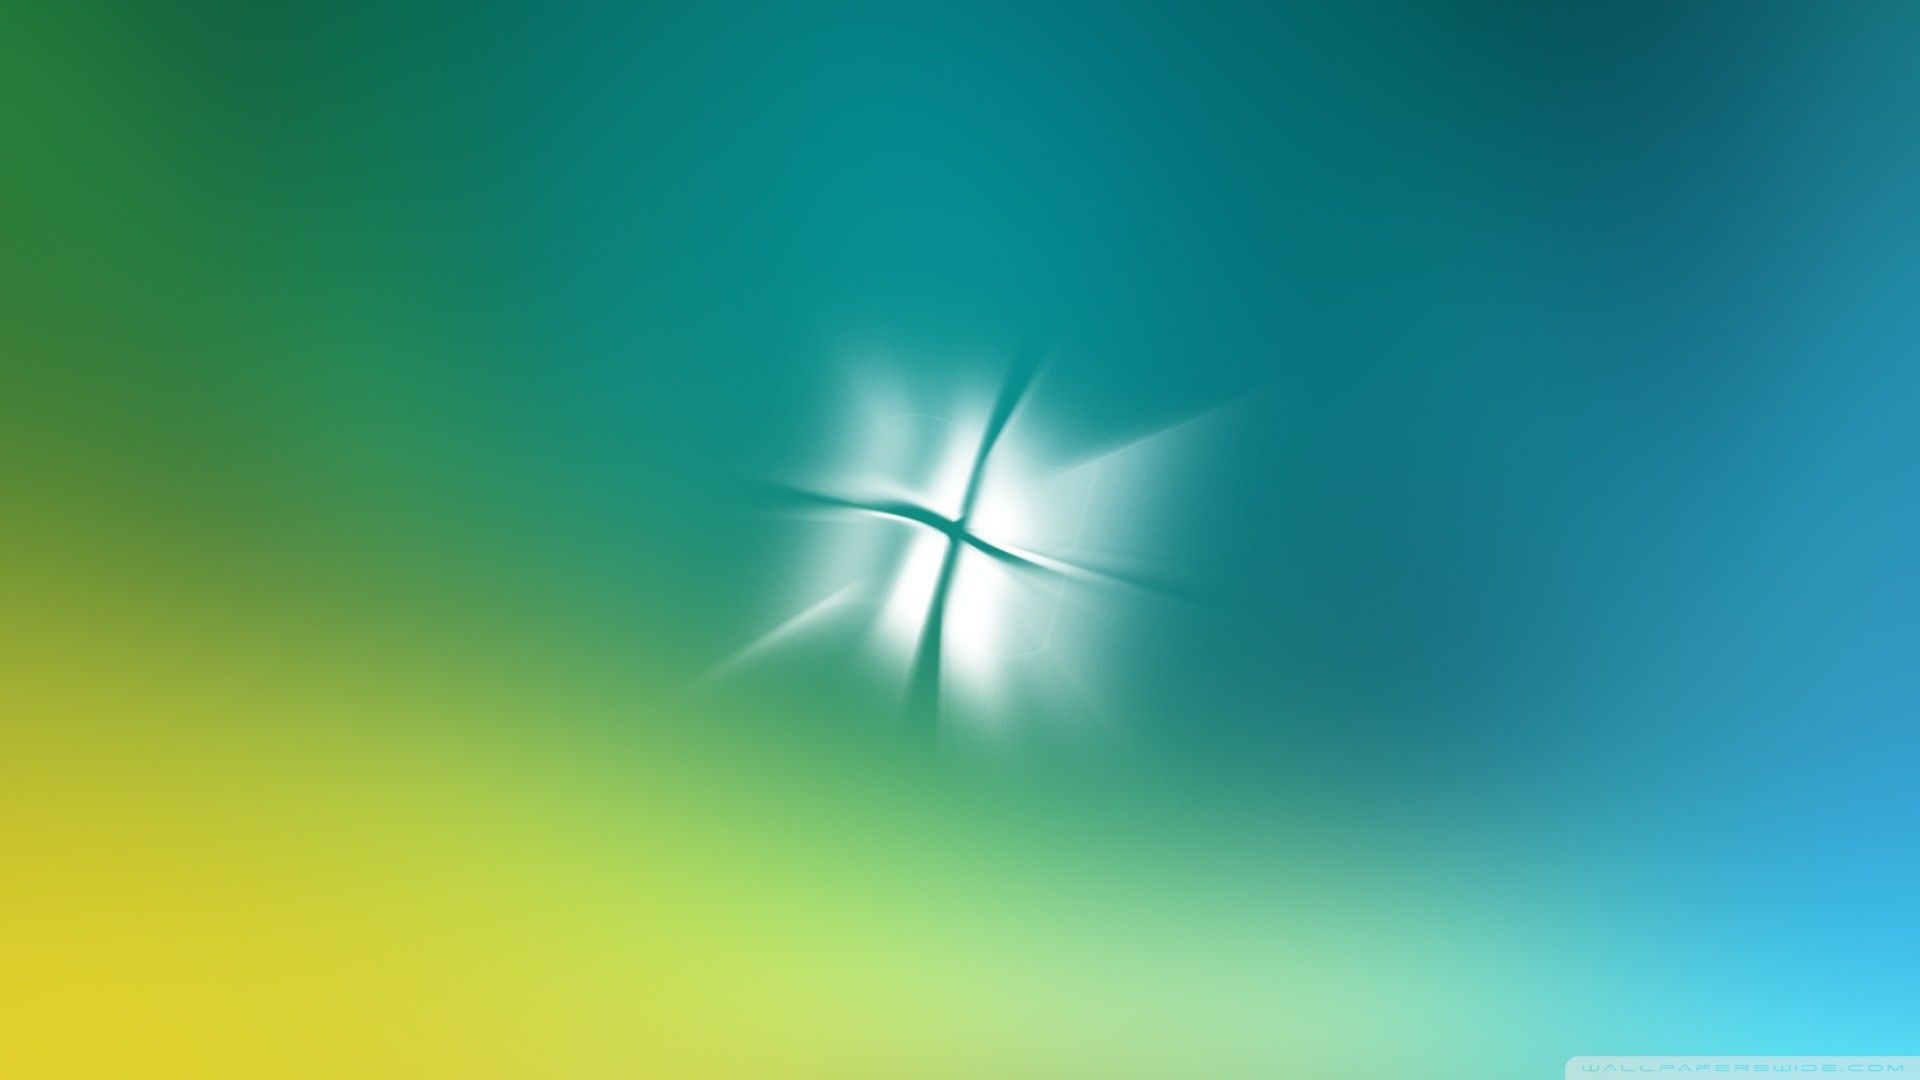 Windows Vista HD Wallpapers High Quality - PixelsTalk.Net